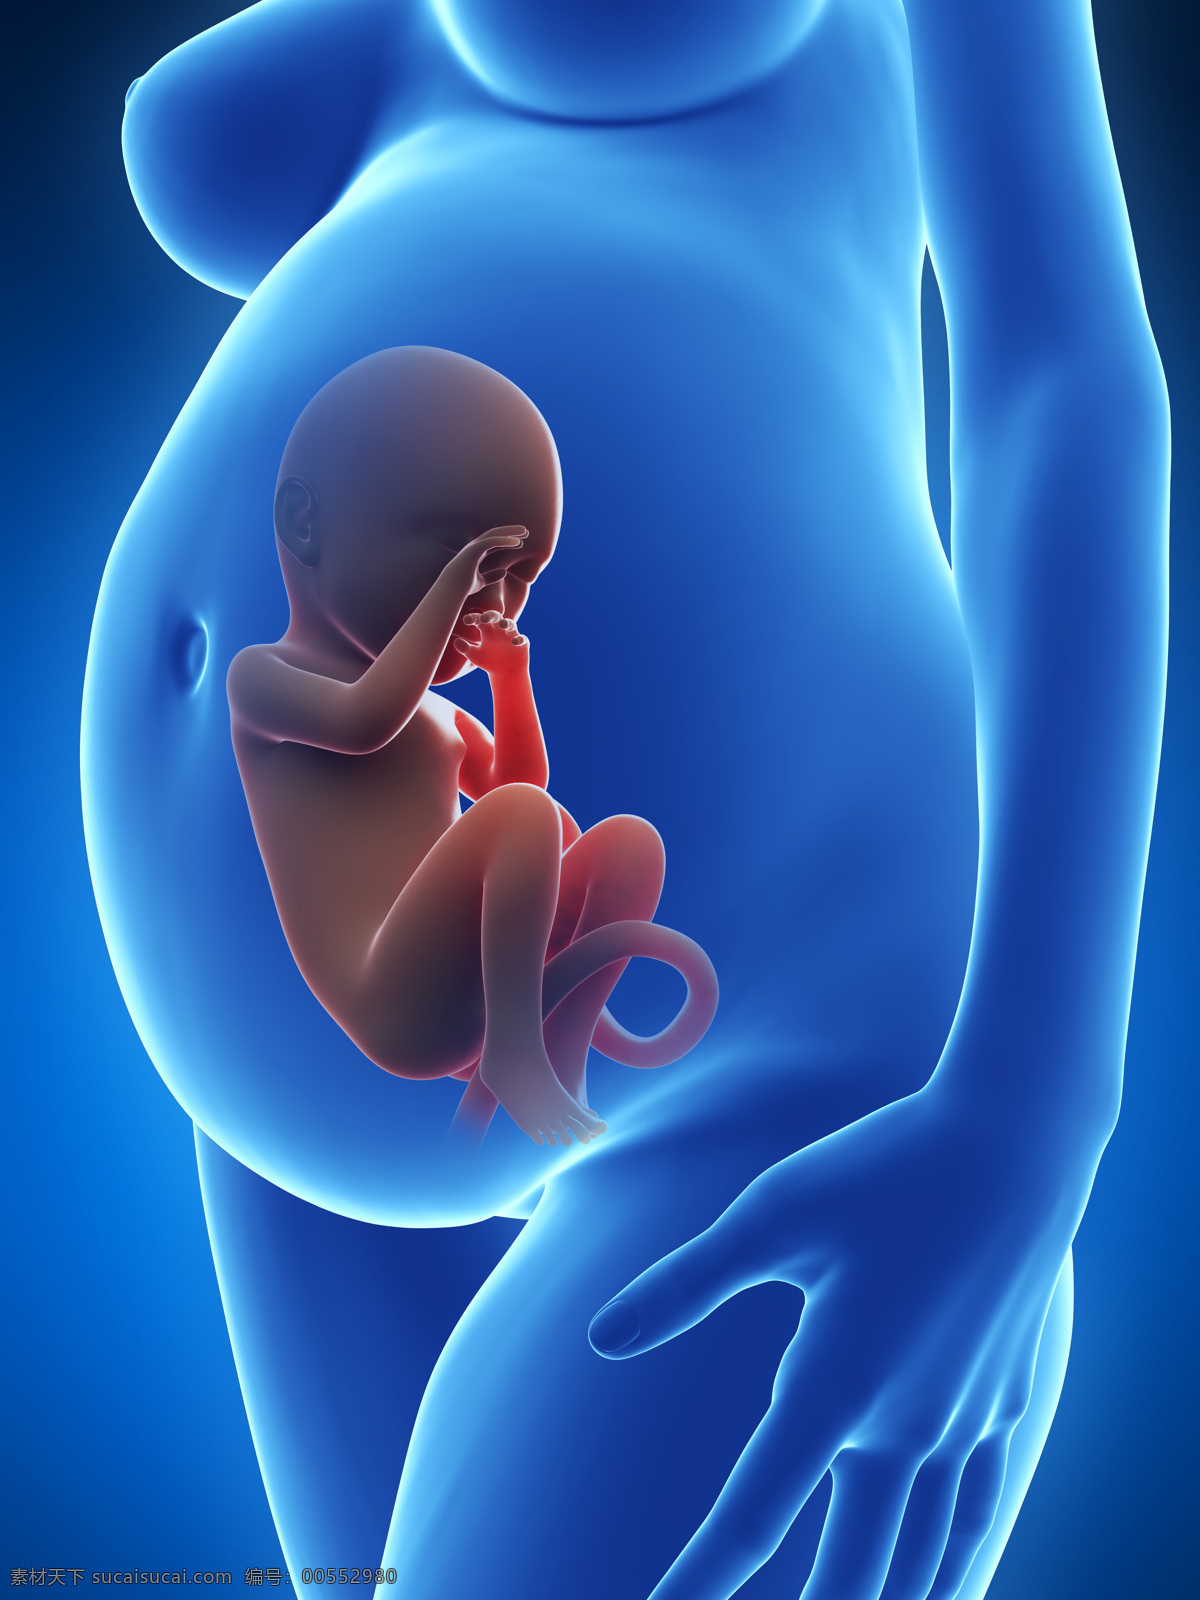 发育中的婴儿 唯美 炫酷 3d 胚胎 发育 婴儿 早期婴儿 初期婴儿 怀孕 子宫里的婴儿 产科 妇产科 早期胚胎 科学 3d设计